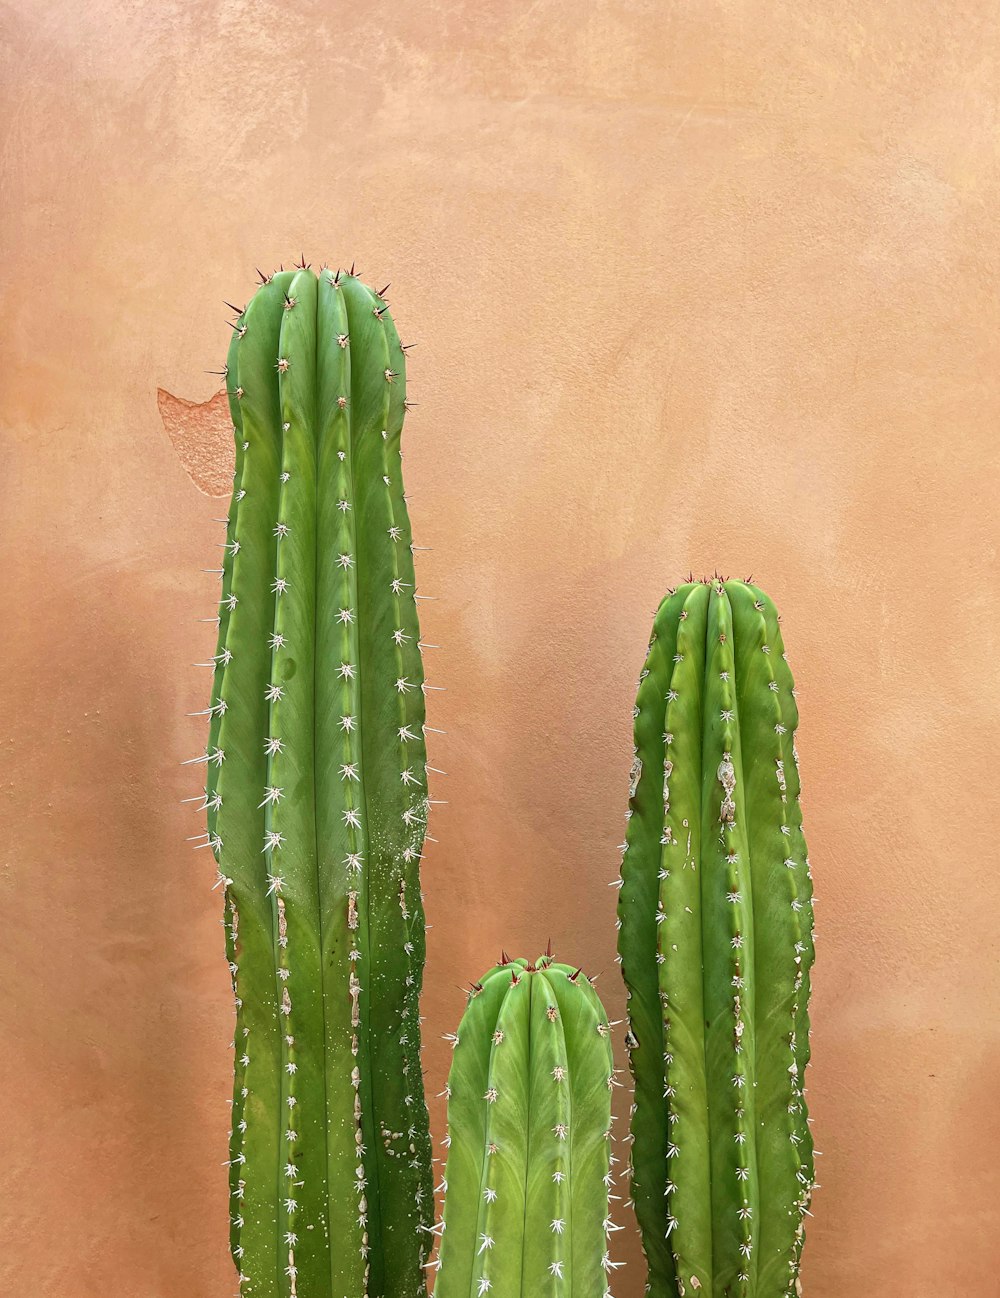 Un paio di piante di cactus verdi sedute l'una accanto all'altra